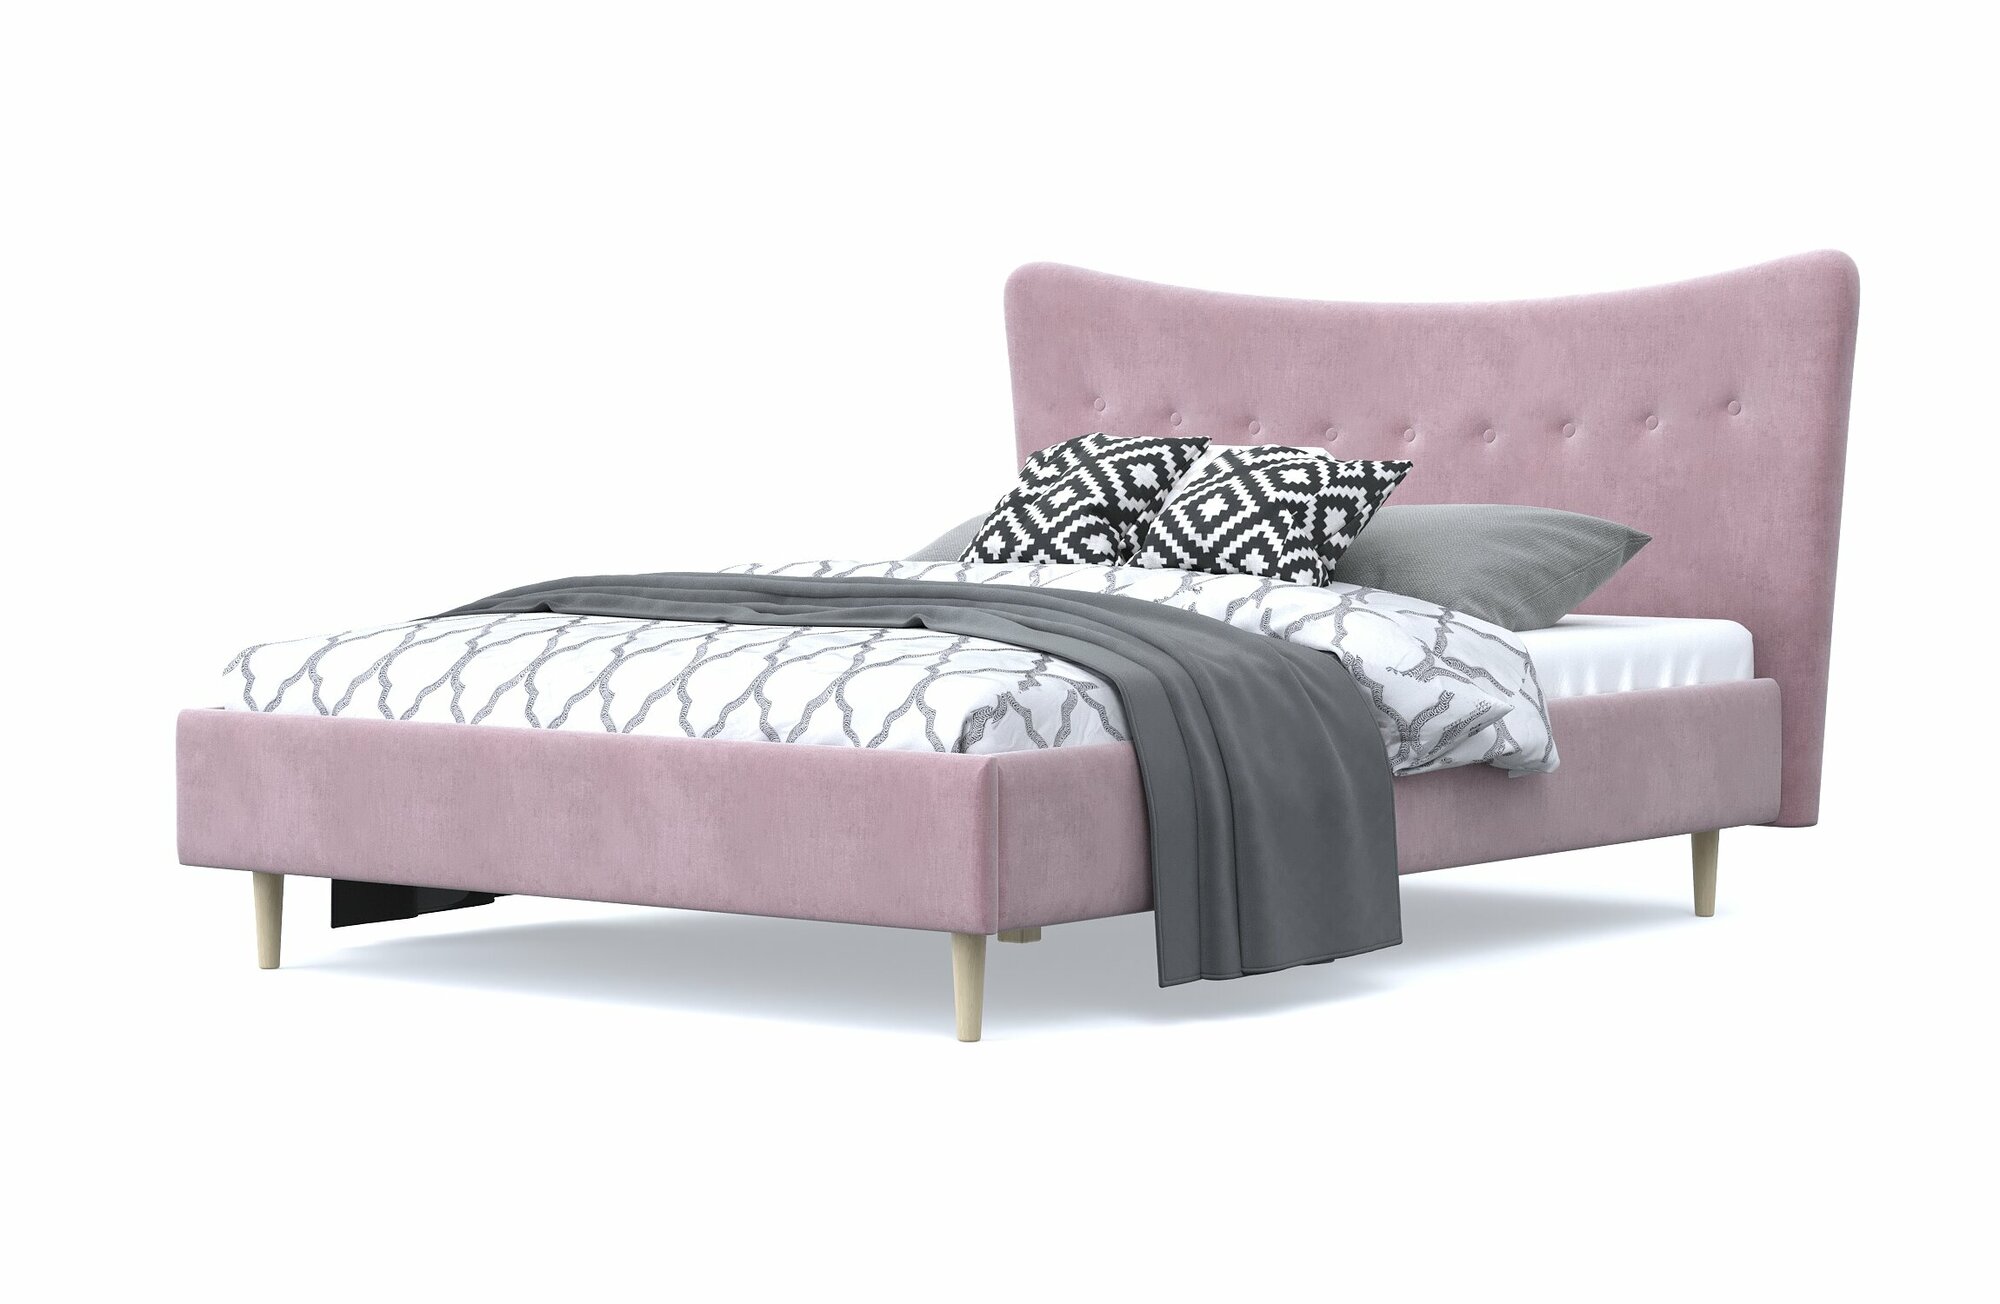 Двуспальная кровать финна 140х200, с мягким изголовьем, розовый, шенилл, массив дерева, на ножках